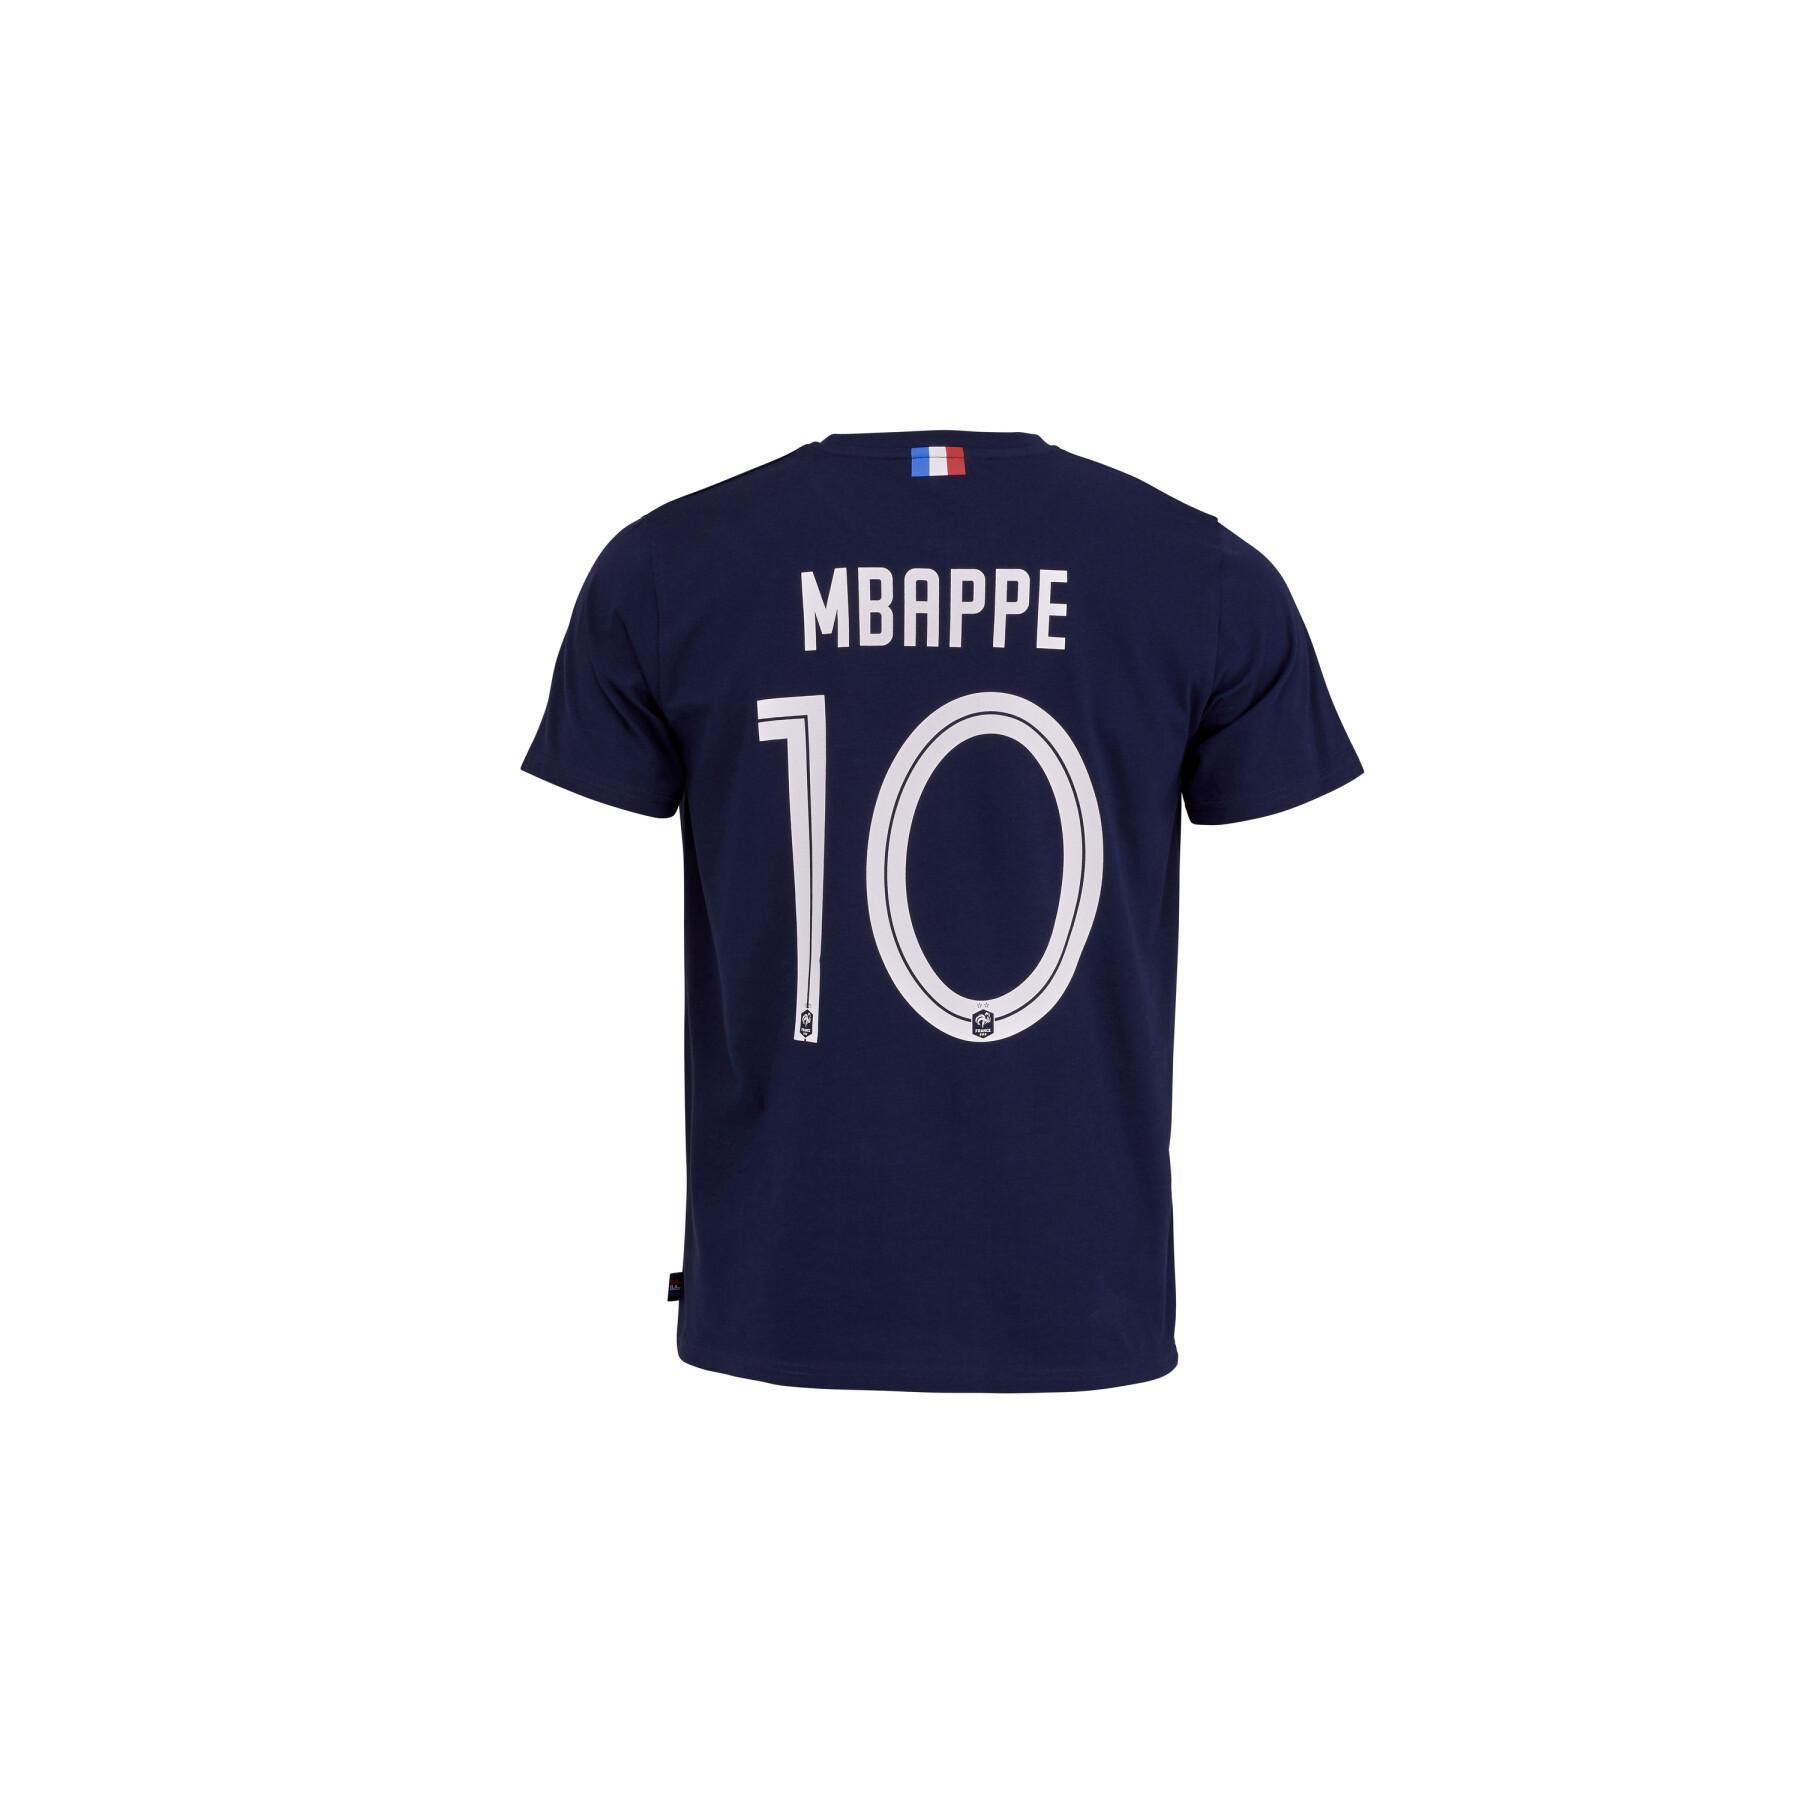 Kinder-T-Shirt France Player Mbappe N°10